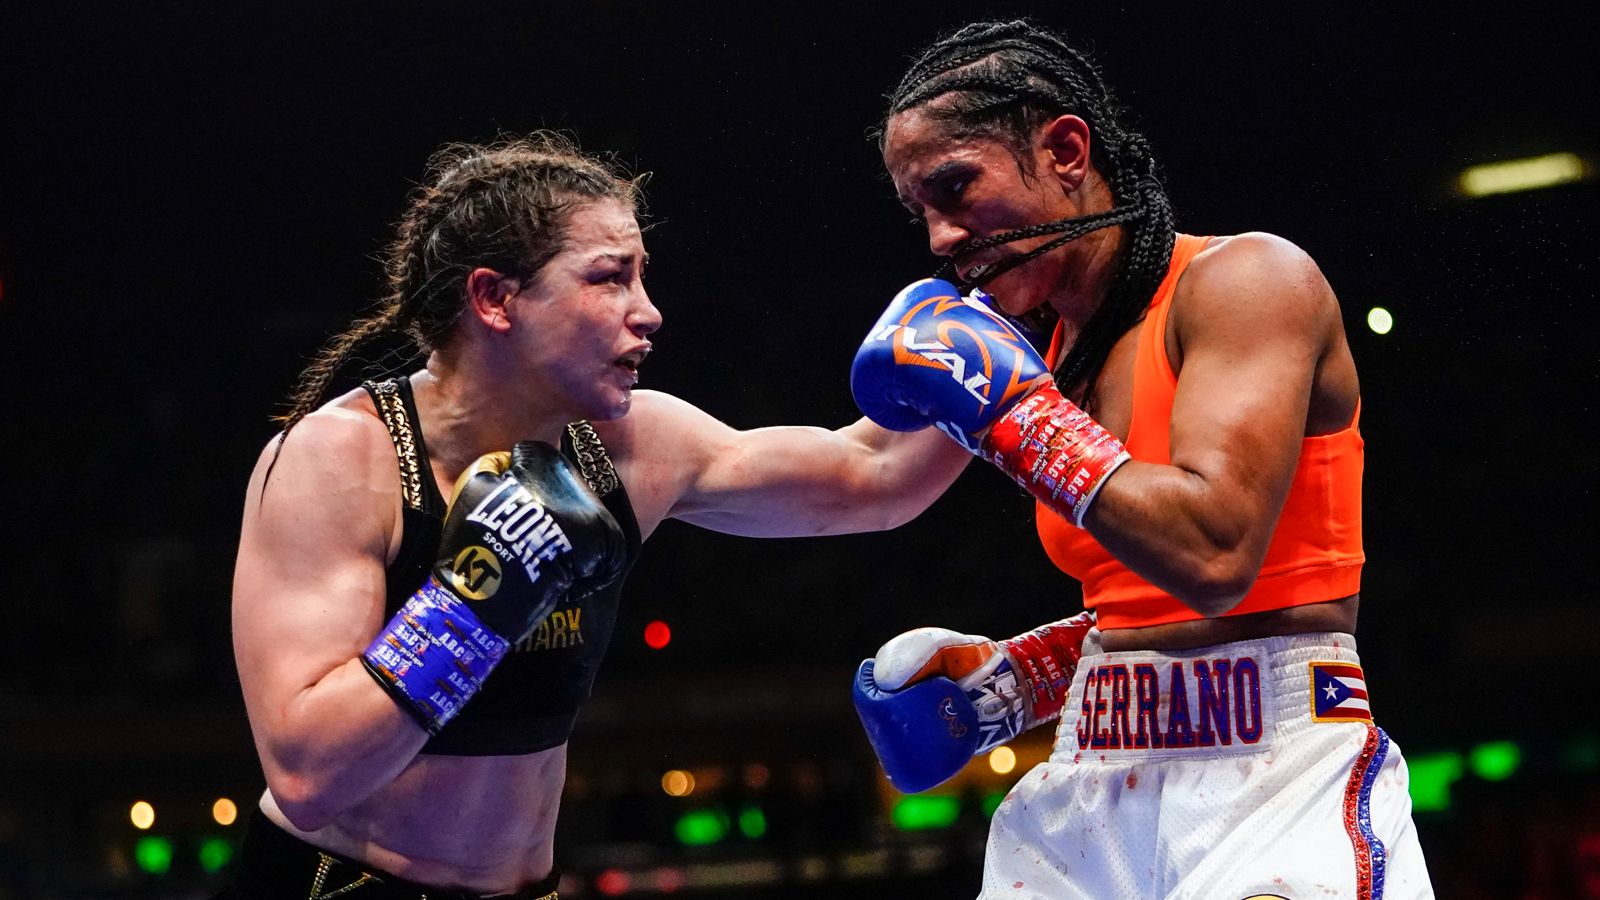 Katie Taylor bat Amanda Serrano dans le plus grand combat de l’histoire de la boxe féminine |  nouvelles du monde